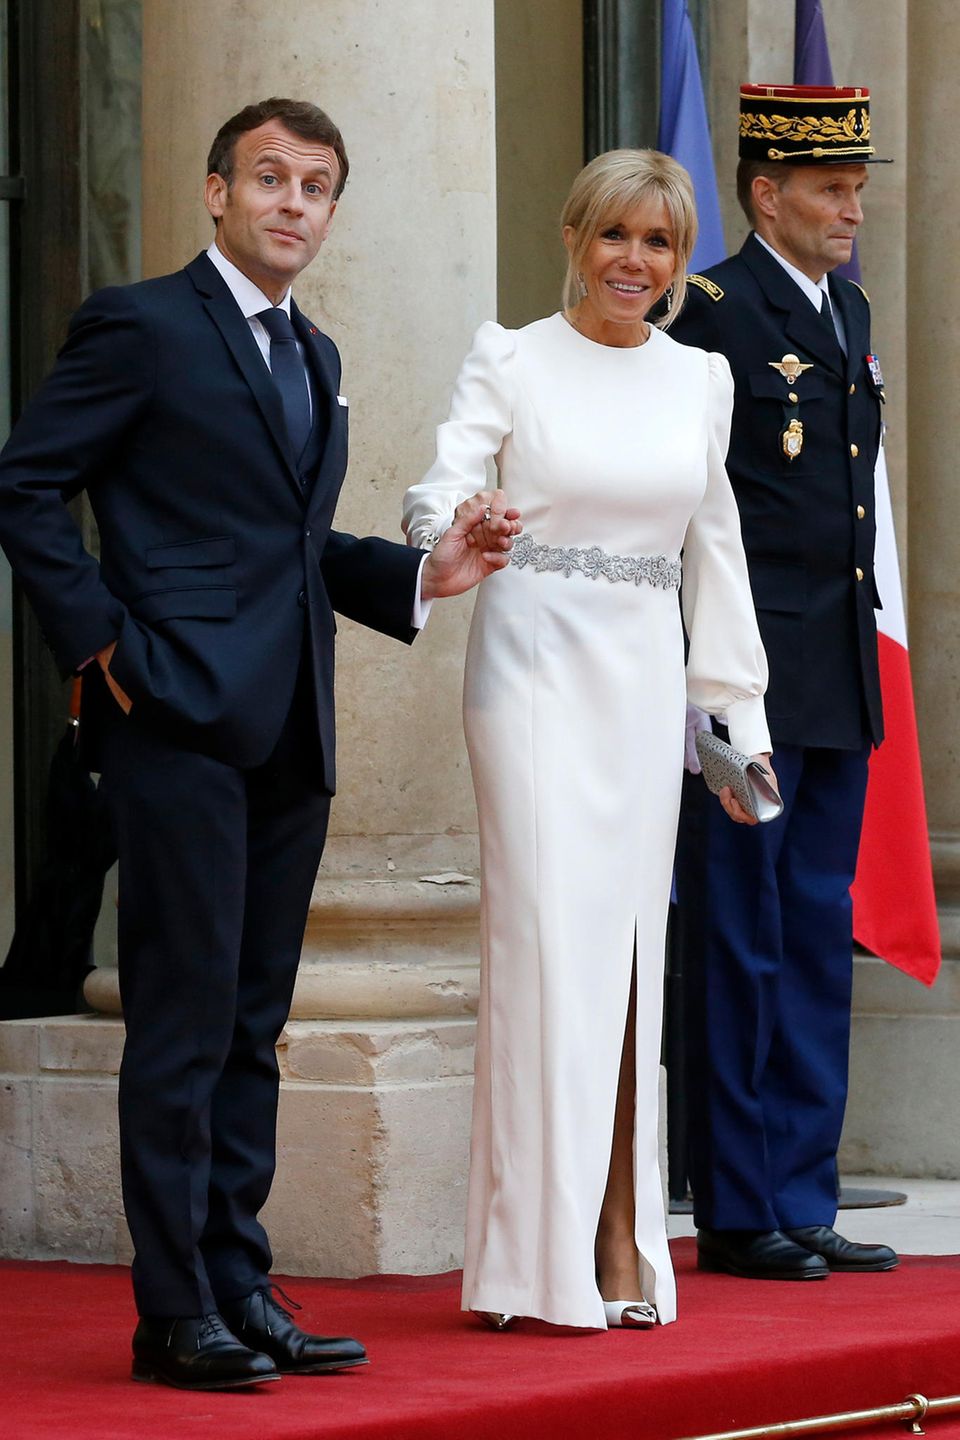 Emmanuel und Brigitte Macron empfangen den italienischen Präsidenten Mattarella